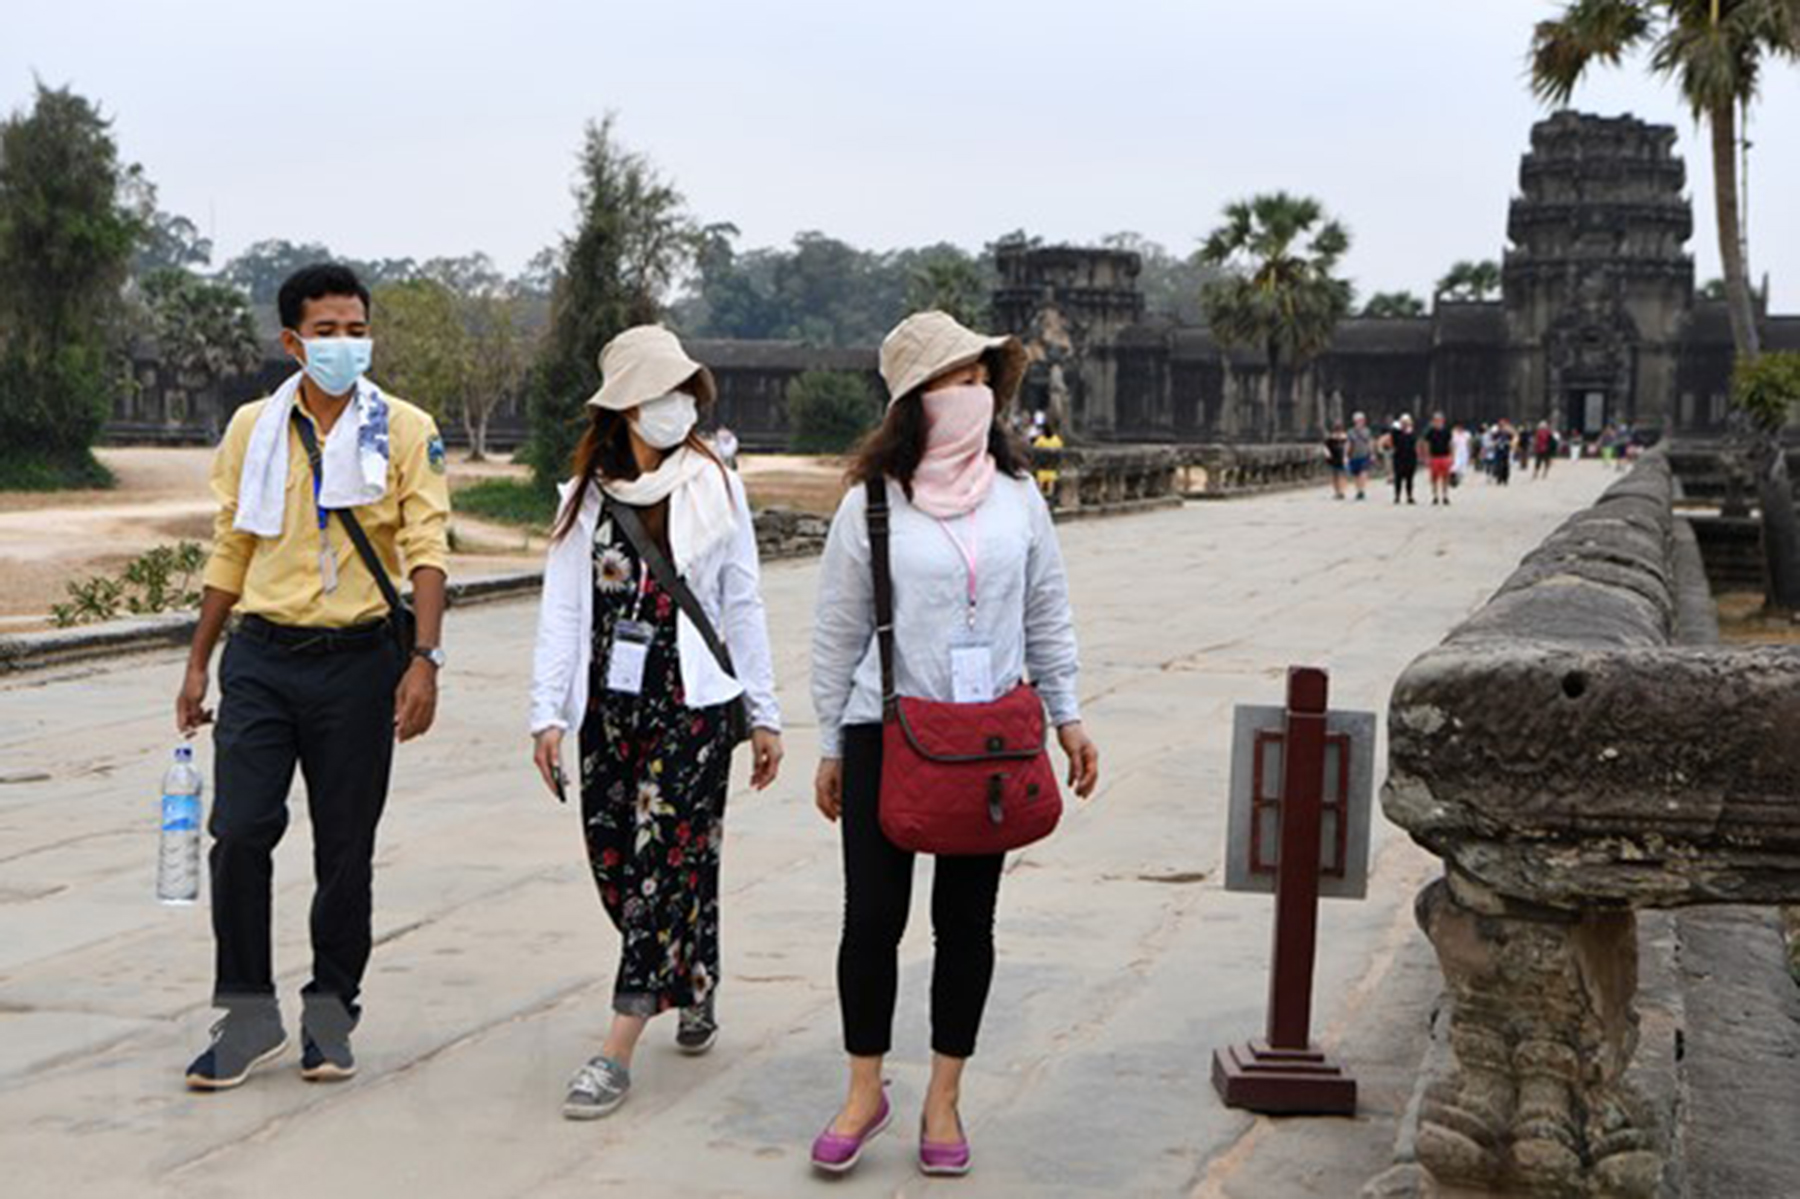 Khách du lịch đeo khẩu trang phòng dịch COVID-19 tại tỉnh Siem Reap, Campuchia ngày 6/3/2020.